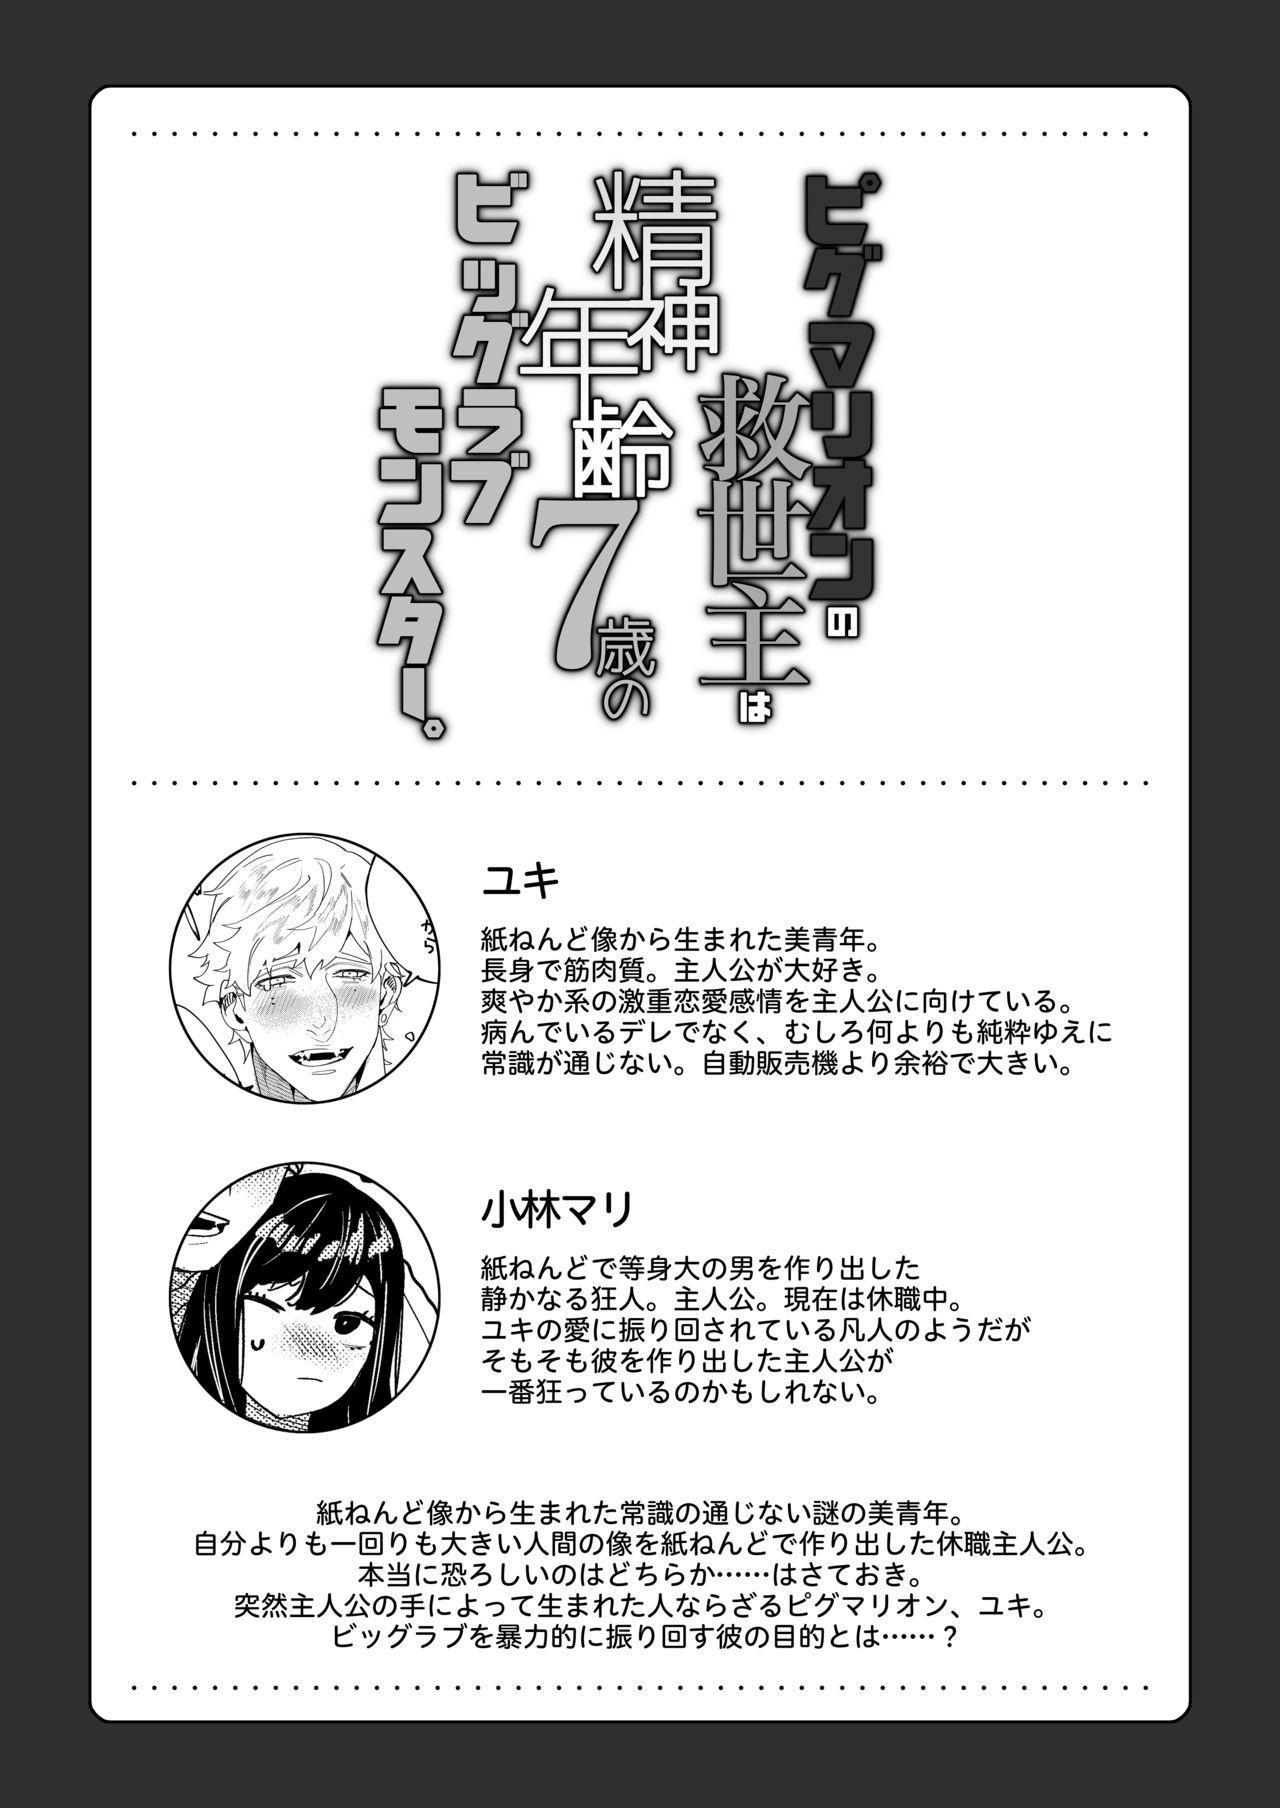 Rabuda Pygmalion no Kyuuseishu wa Seishin Nenrei 7-sai no Big Love Monster. - Original Amateurs Gone Wild - Page 3